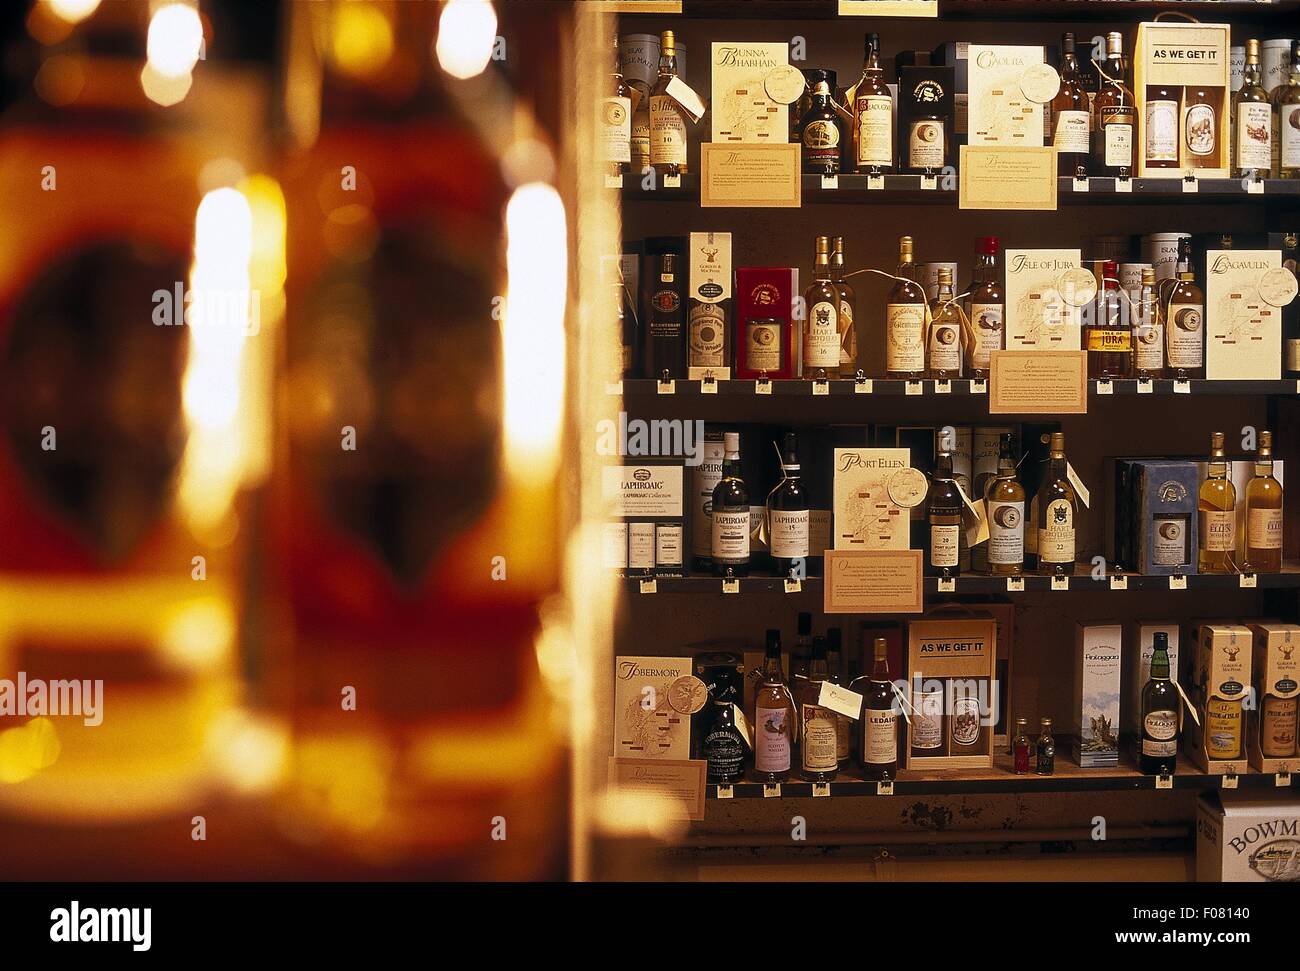 Tablette avec divers whiskies avec leurs appellations d'origine Banque D'Images